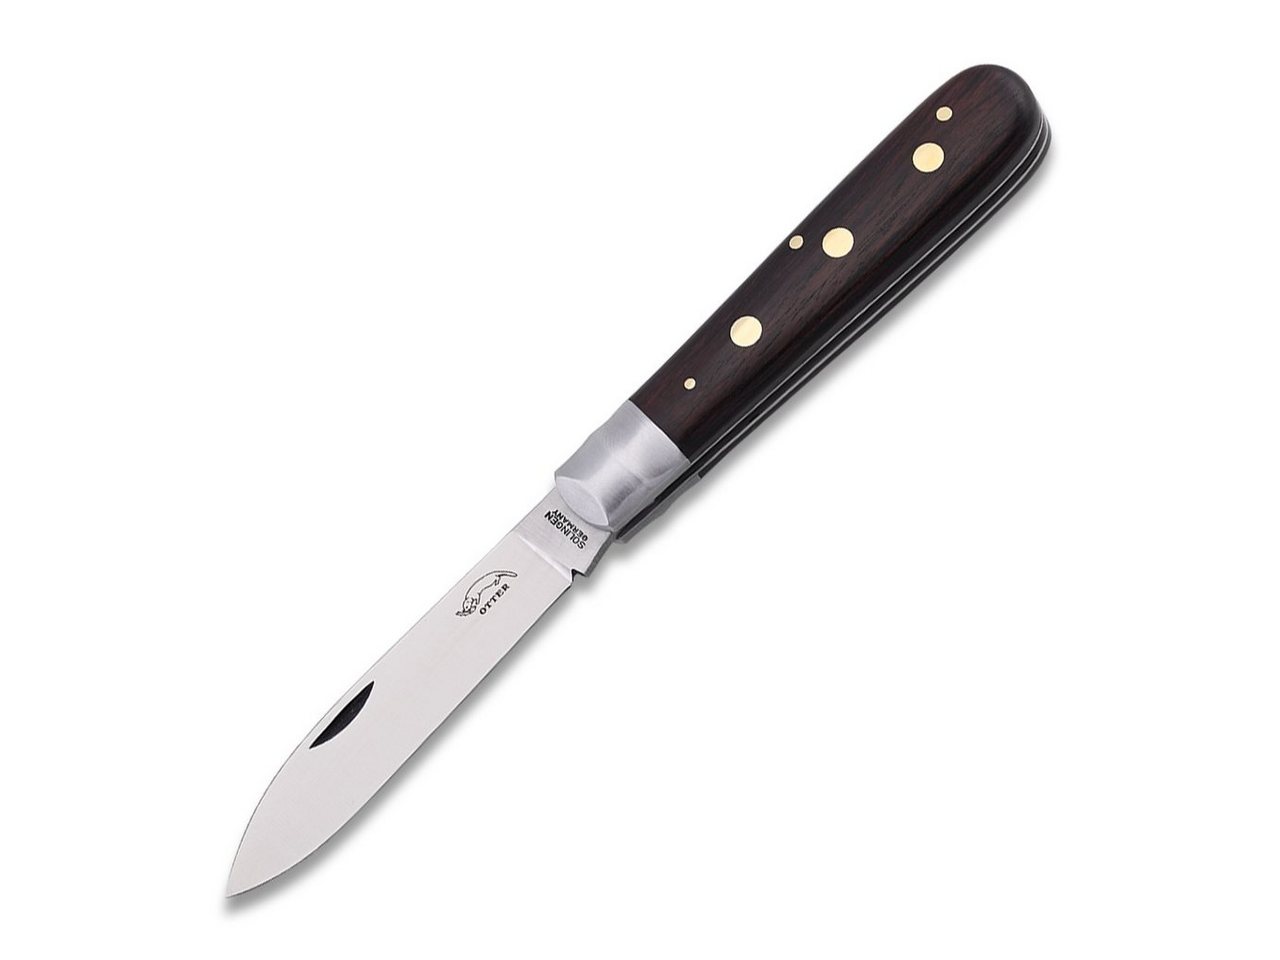 Otter Messer Taschenmesser Drei-Nieten-Messer Grenadill Klinge Carbonstahl, nicht rostfrei, Messingnieten, Slipjoint von Otter Messer